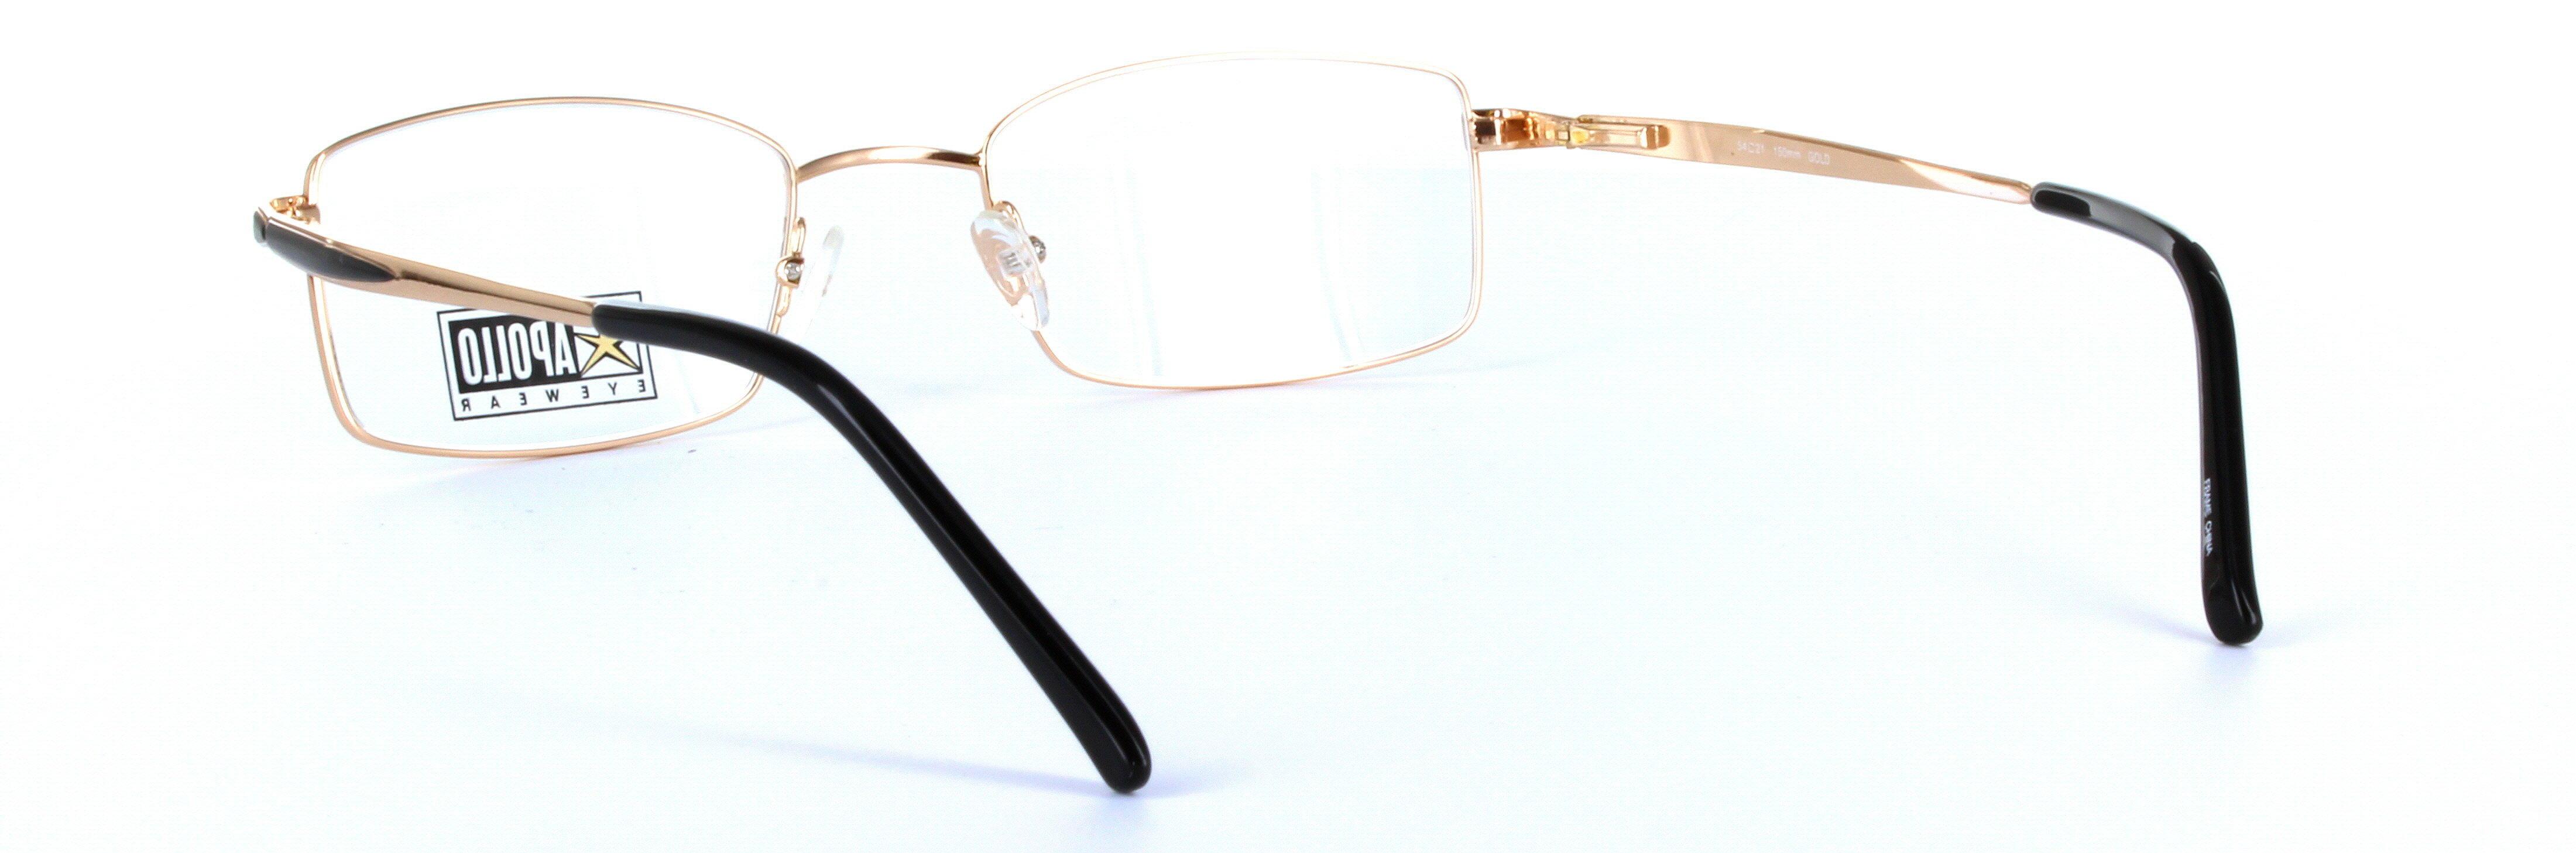 Chianti Gold Full Rim Rectangular Metal Glasses  - Image View 3